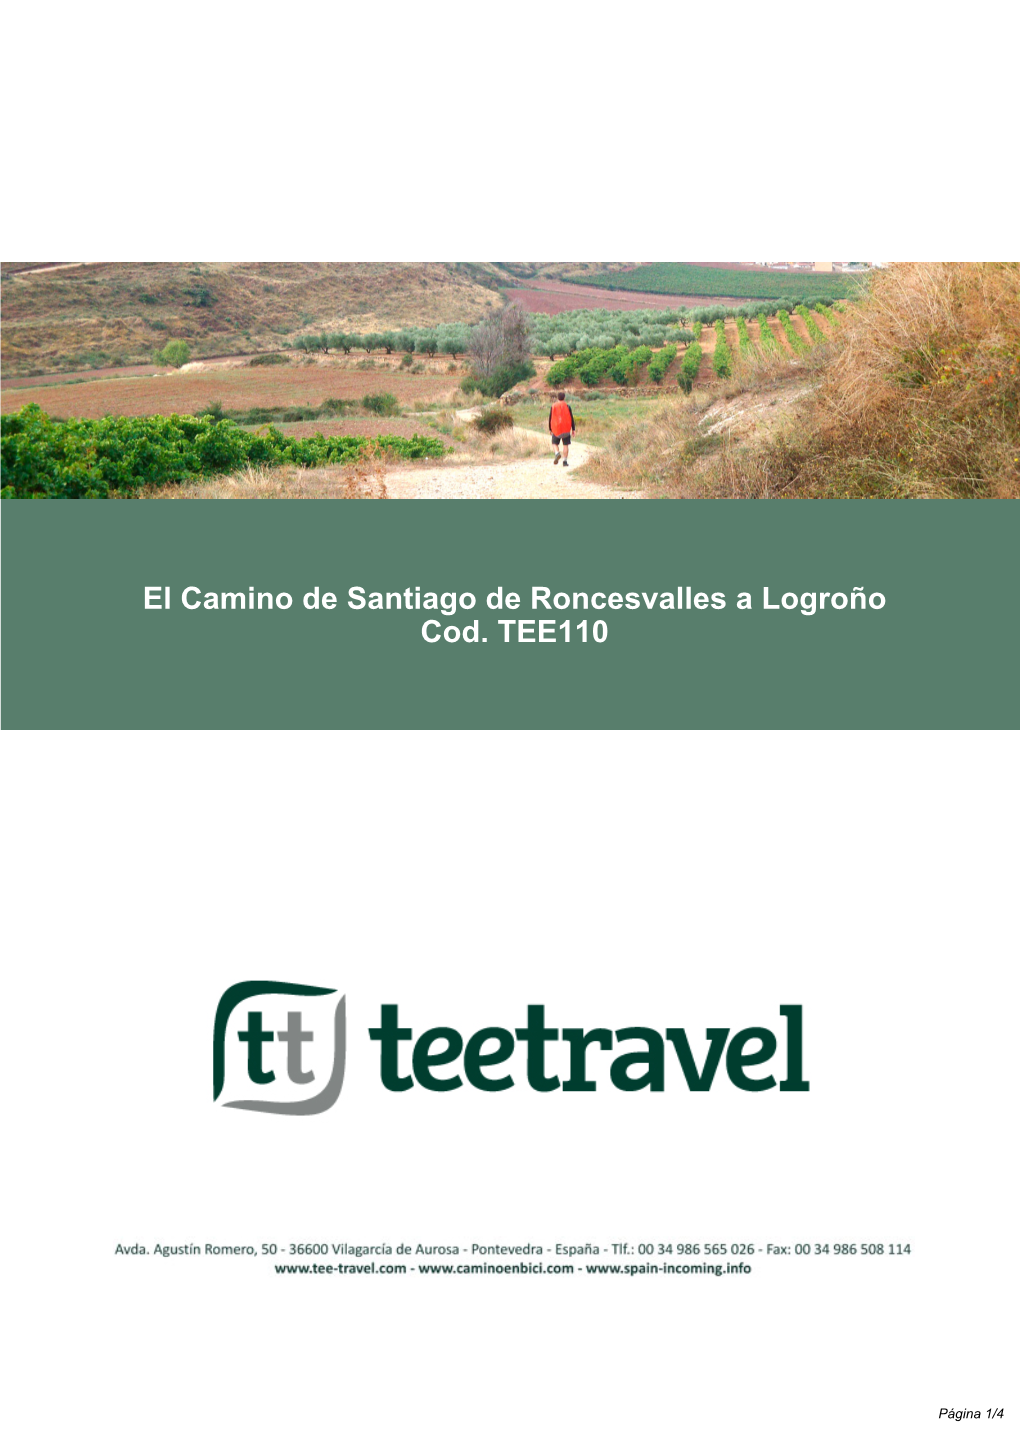 El Camino De Santiago De Roncesvalles a Logroño Cod